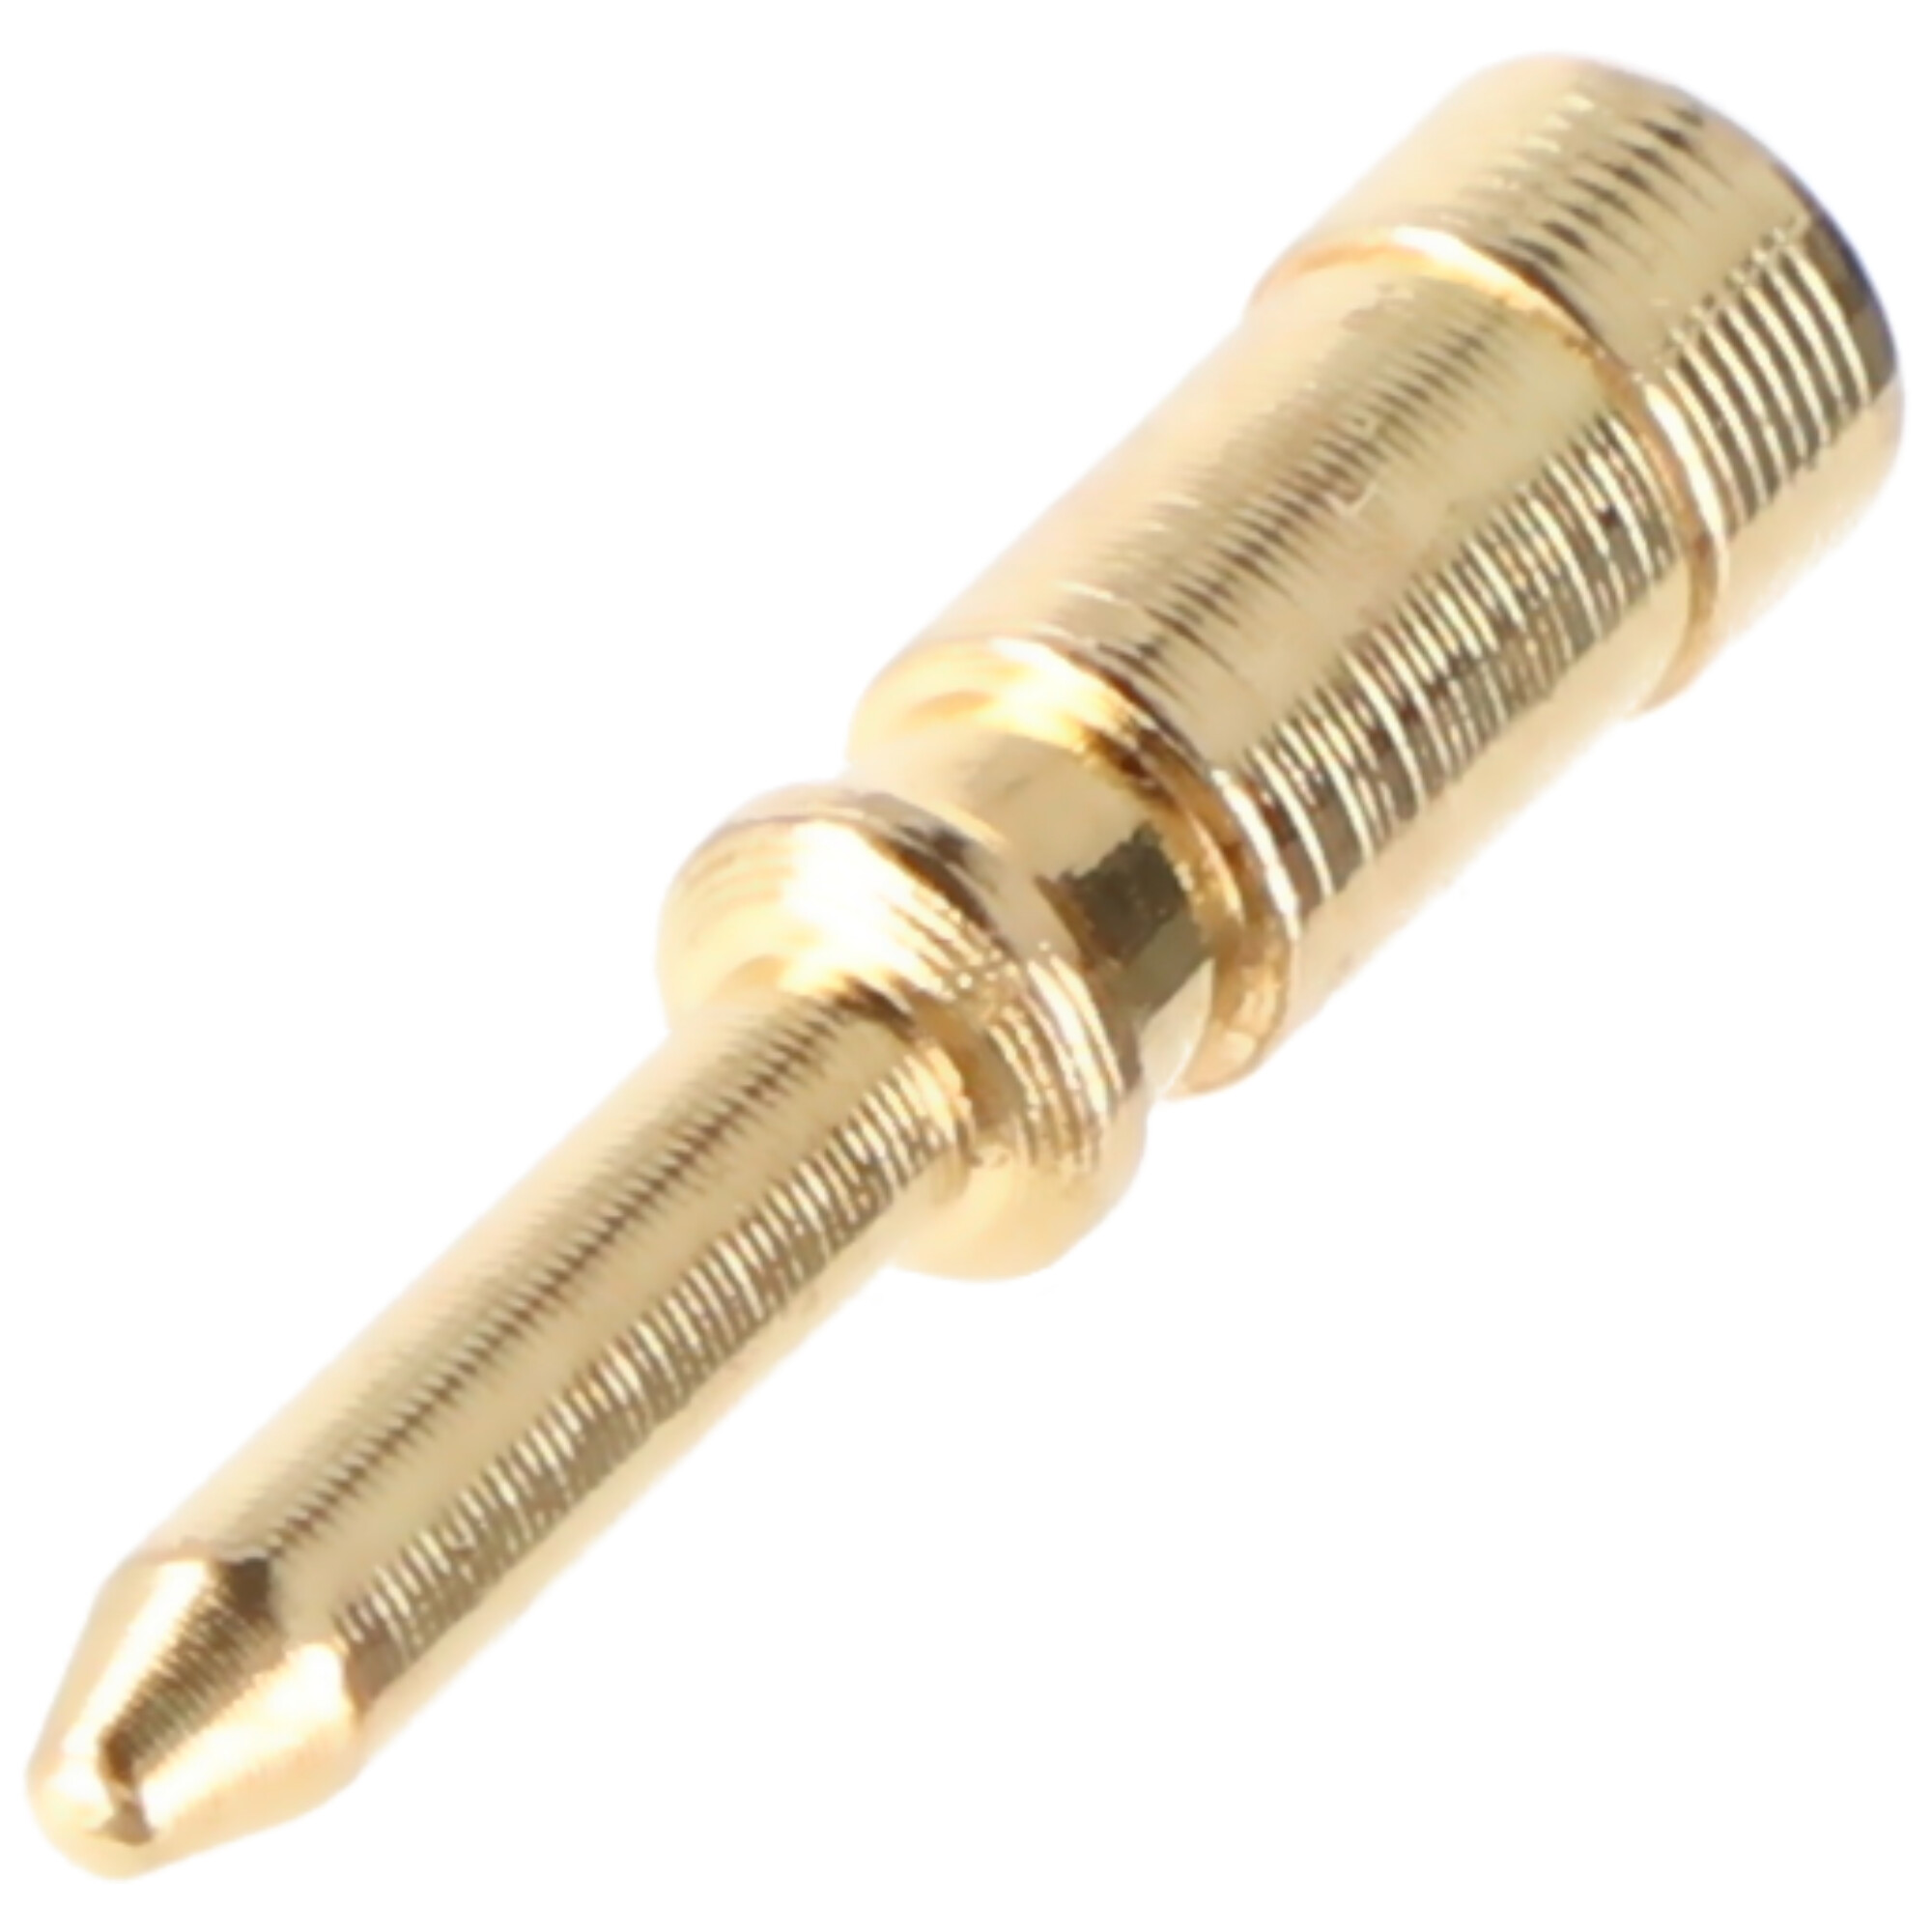 Goobay BNC-Crimpstecker - für RG58-/U-Kabel, mit vergoldetem Pin